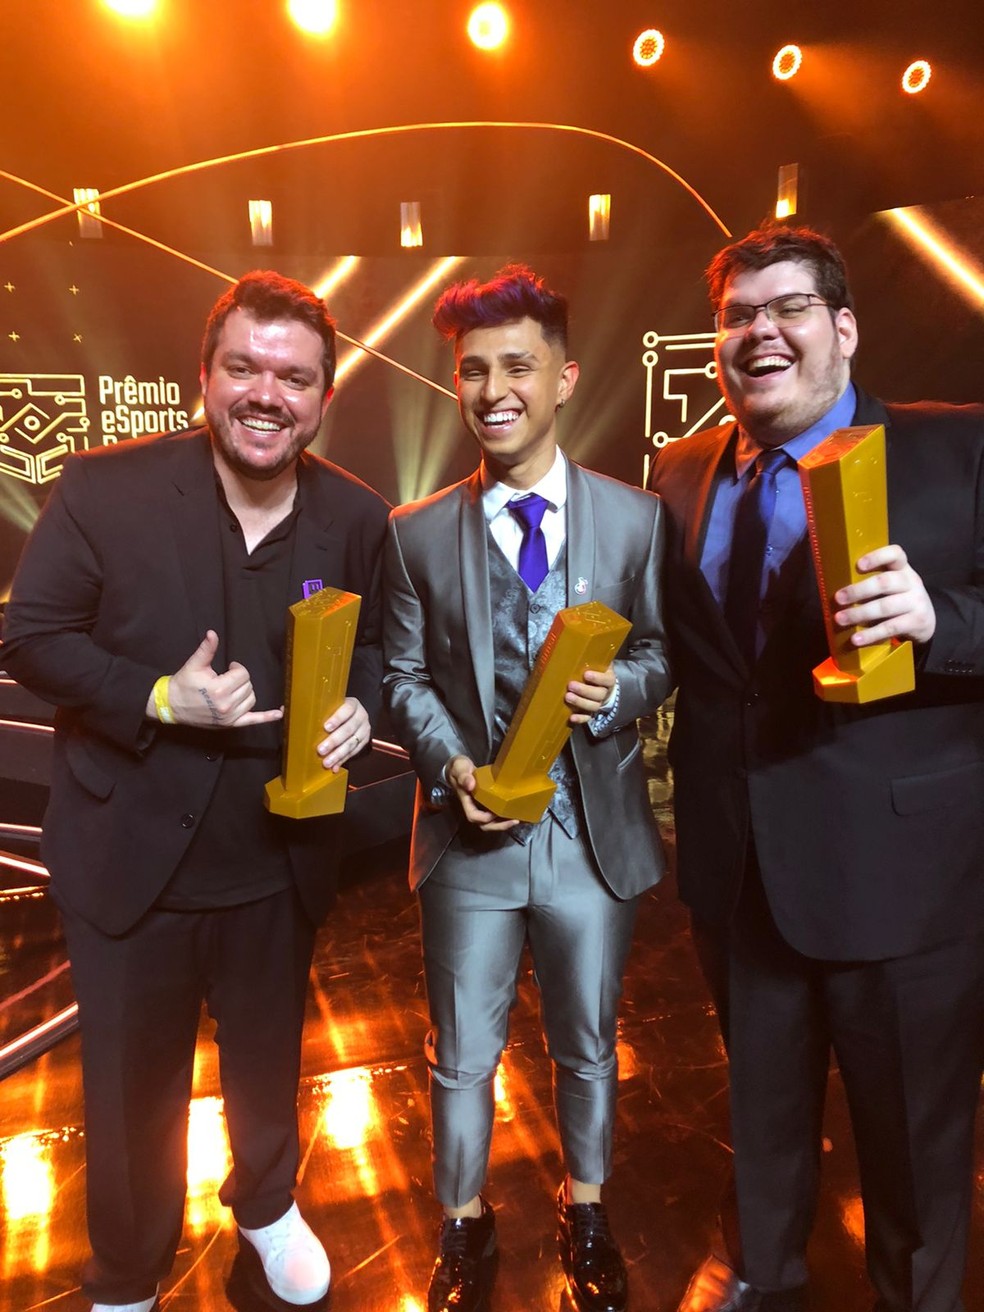 Prêmio eSports Brasil: Gaules, Casimiro e FURIA vencem; veja a lista